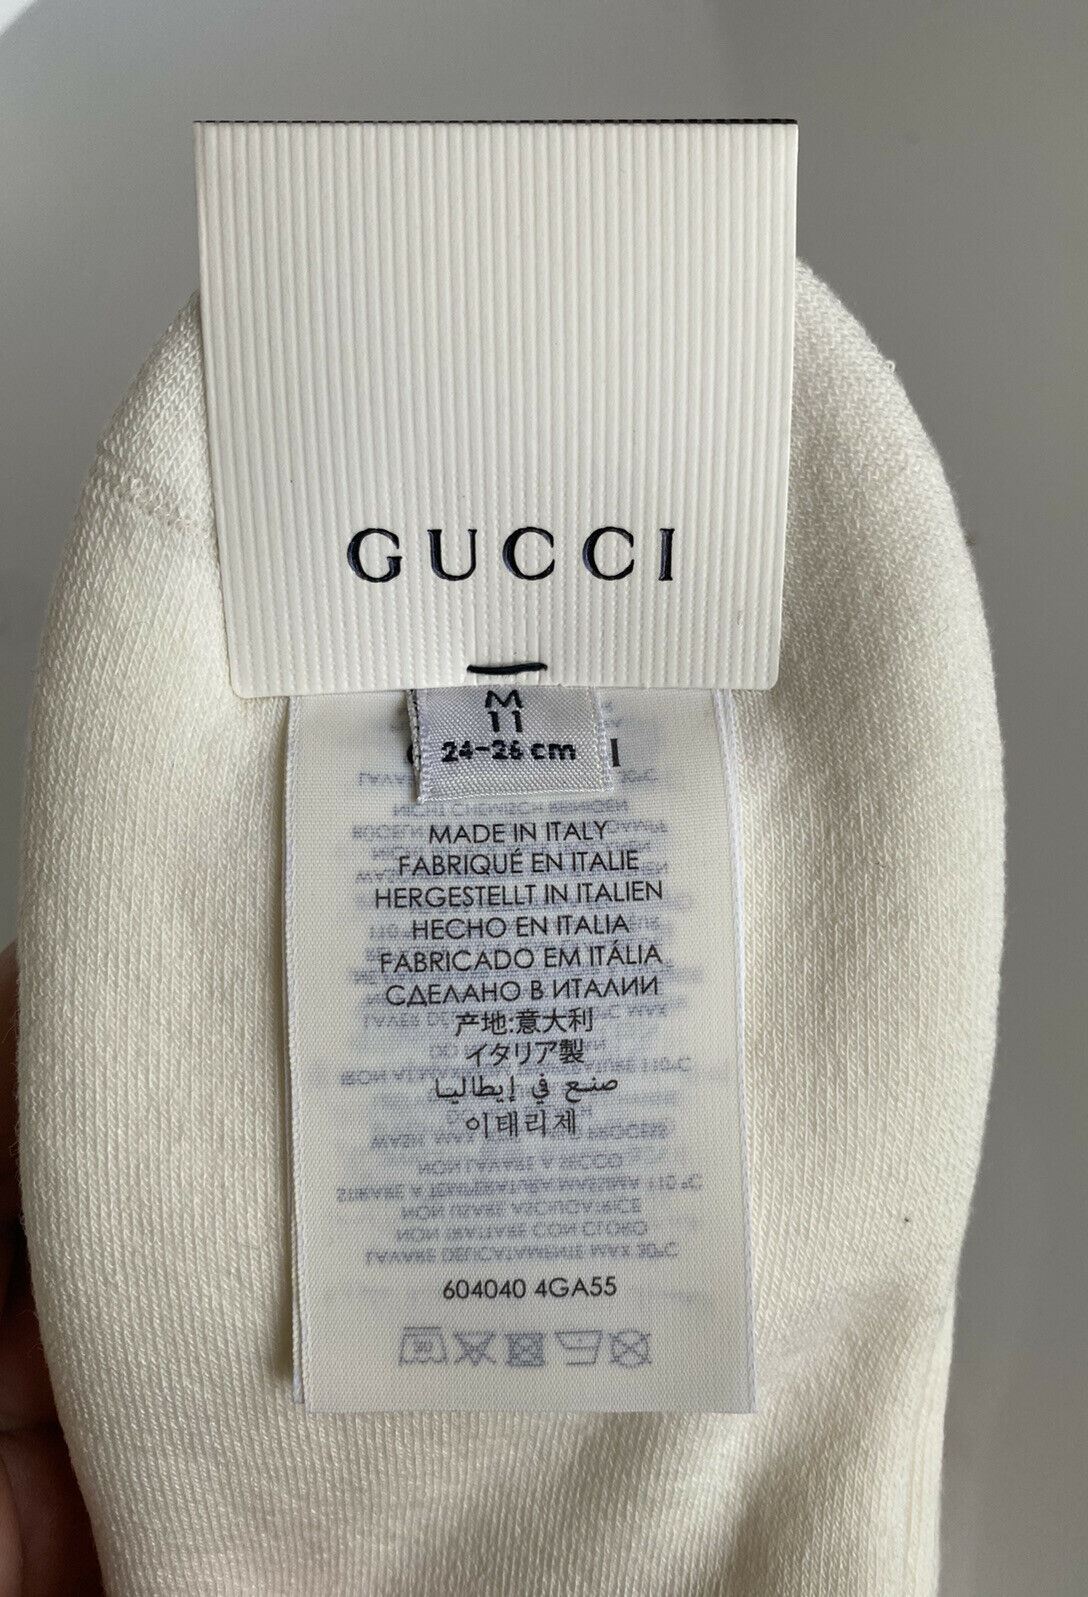 Носки NWT Gucci Lit Spon белые/зеленые/красные ML (24-26 см) производство Италия 604040 